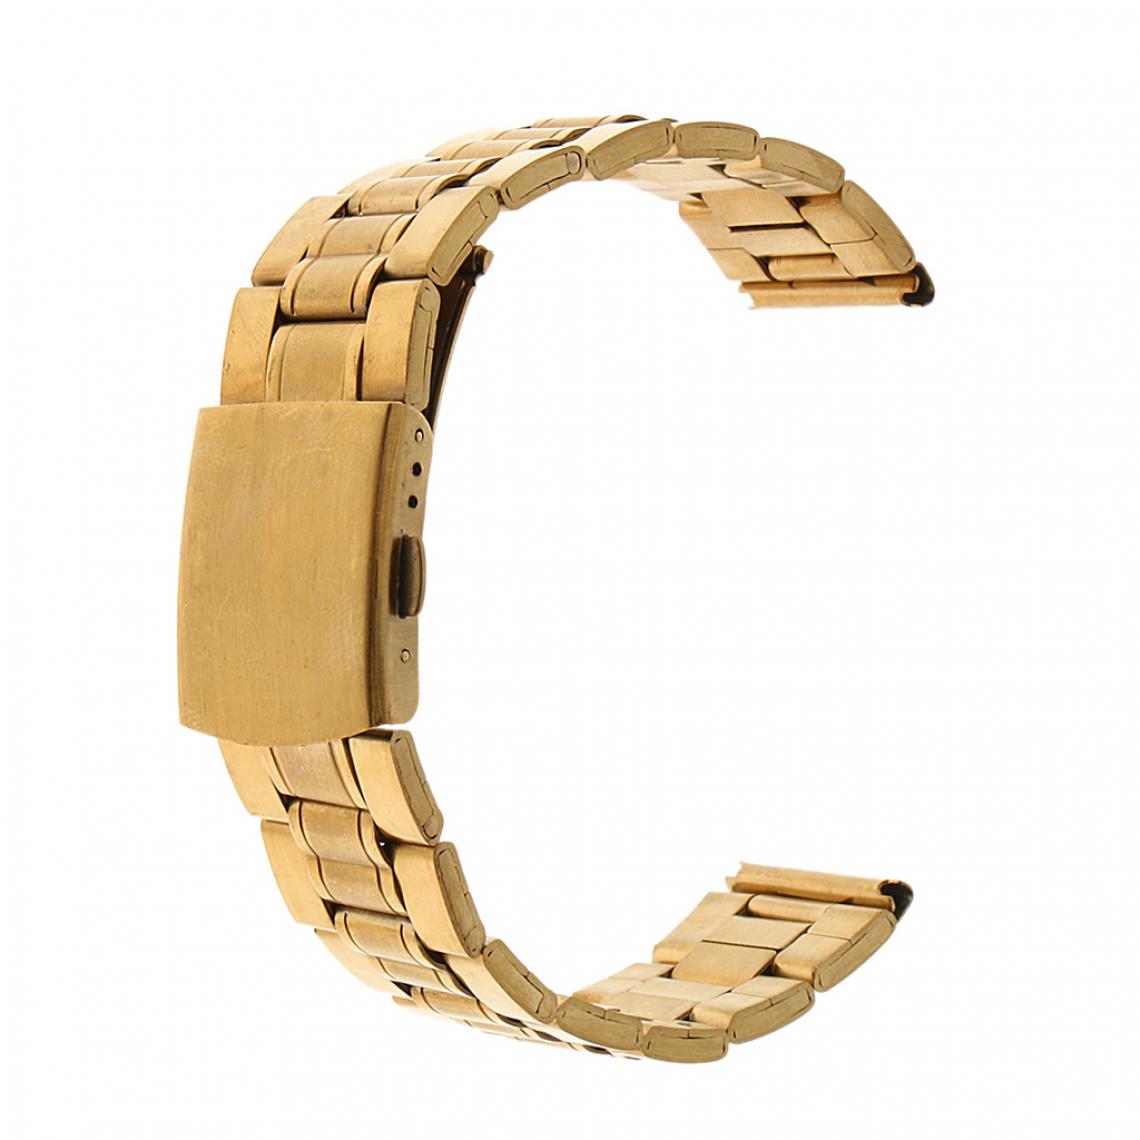 marque generique - Bracelet en métal 12mm de remplacement de bracelet en acier inoxydable pour hommes - Accessoires montres connectées